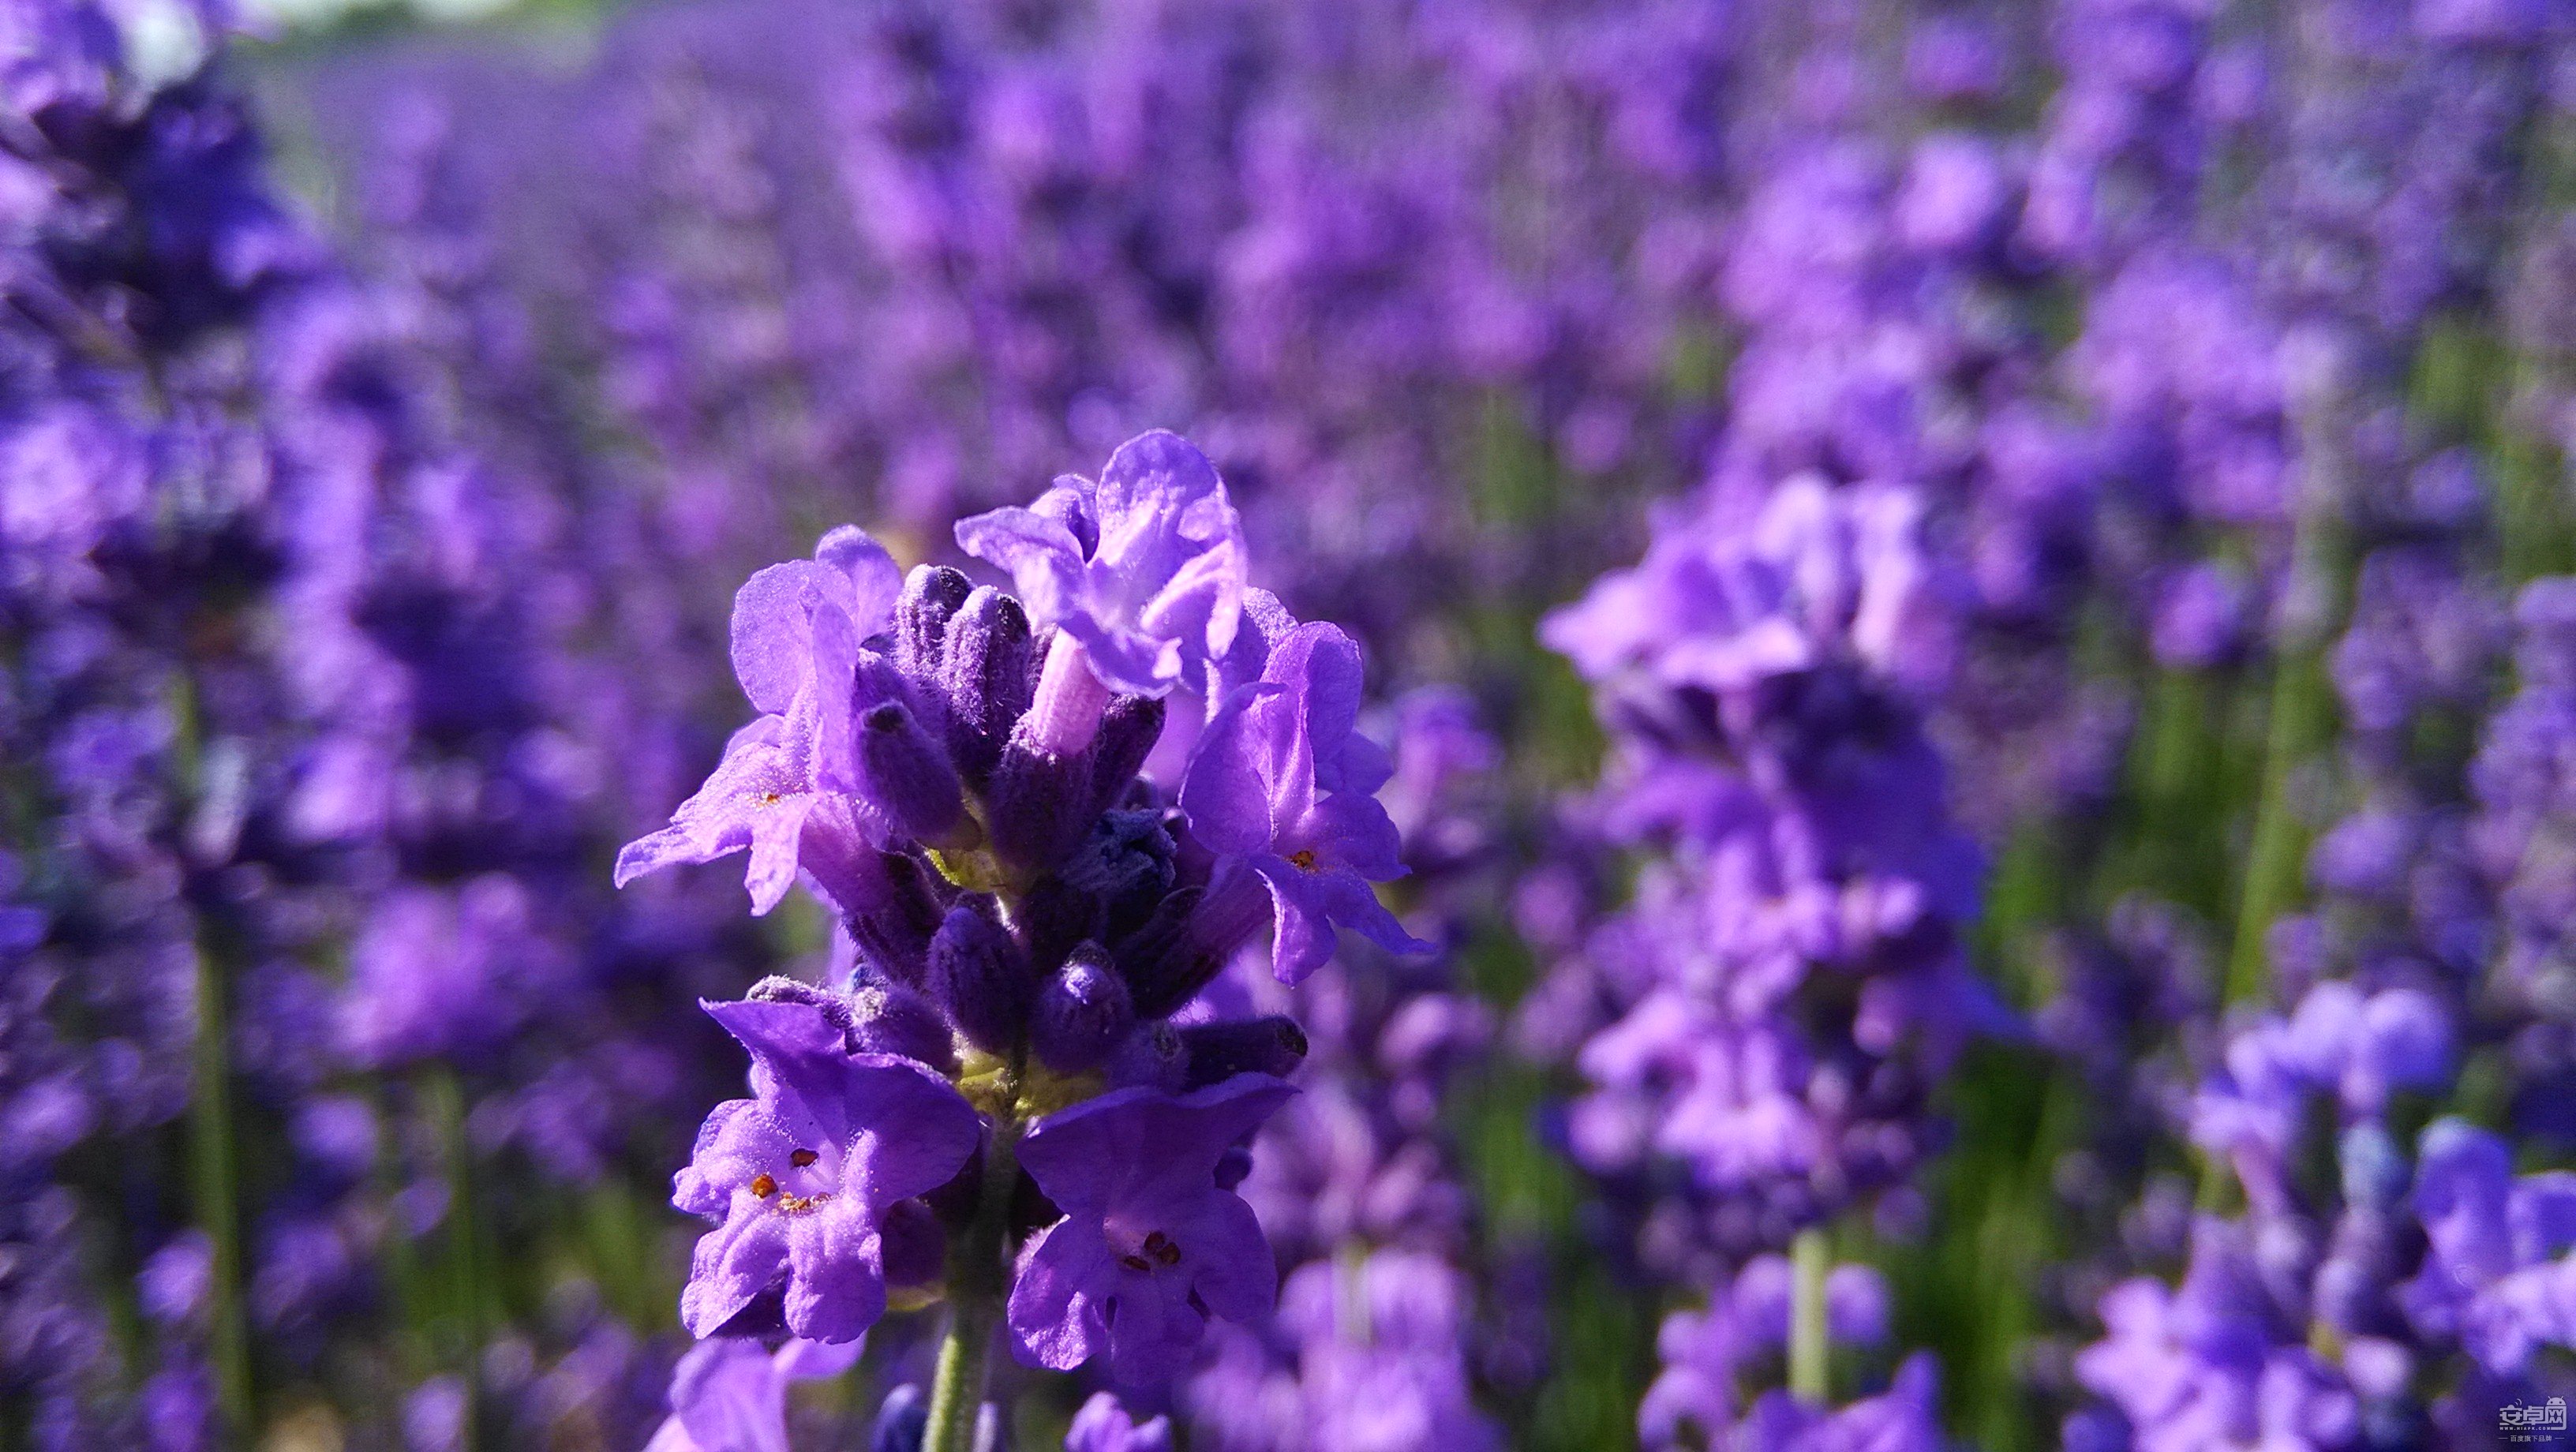 小米2s随心拍新疆伊犁的紫色薰衣草花海